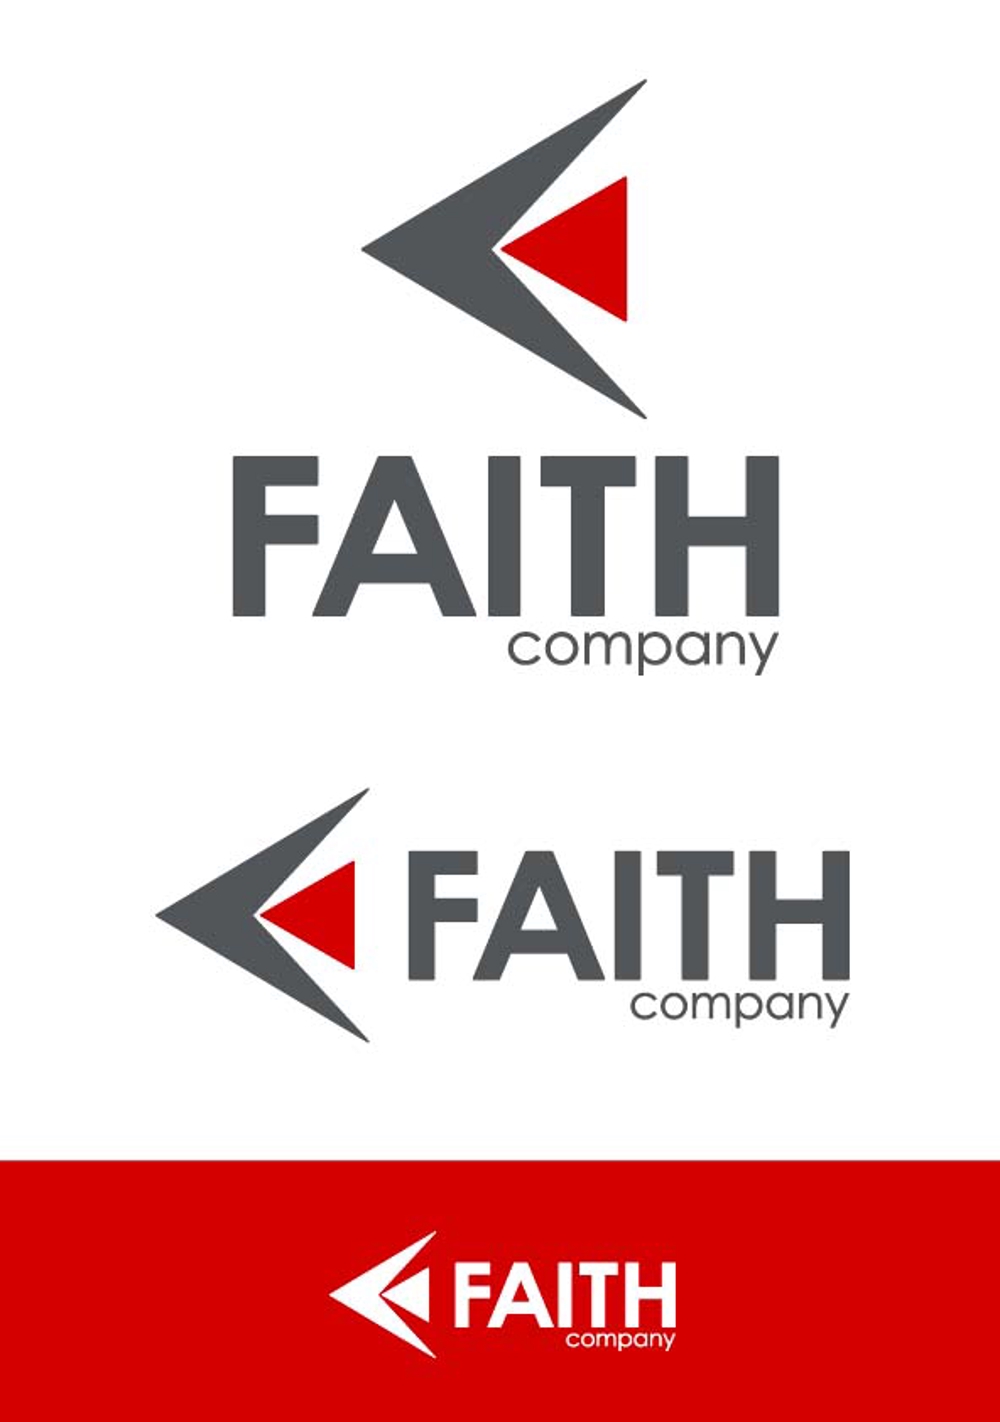 FAITH company01.jpg